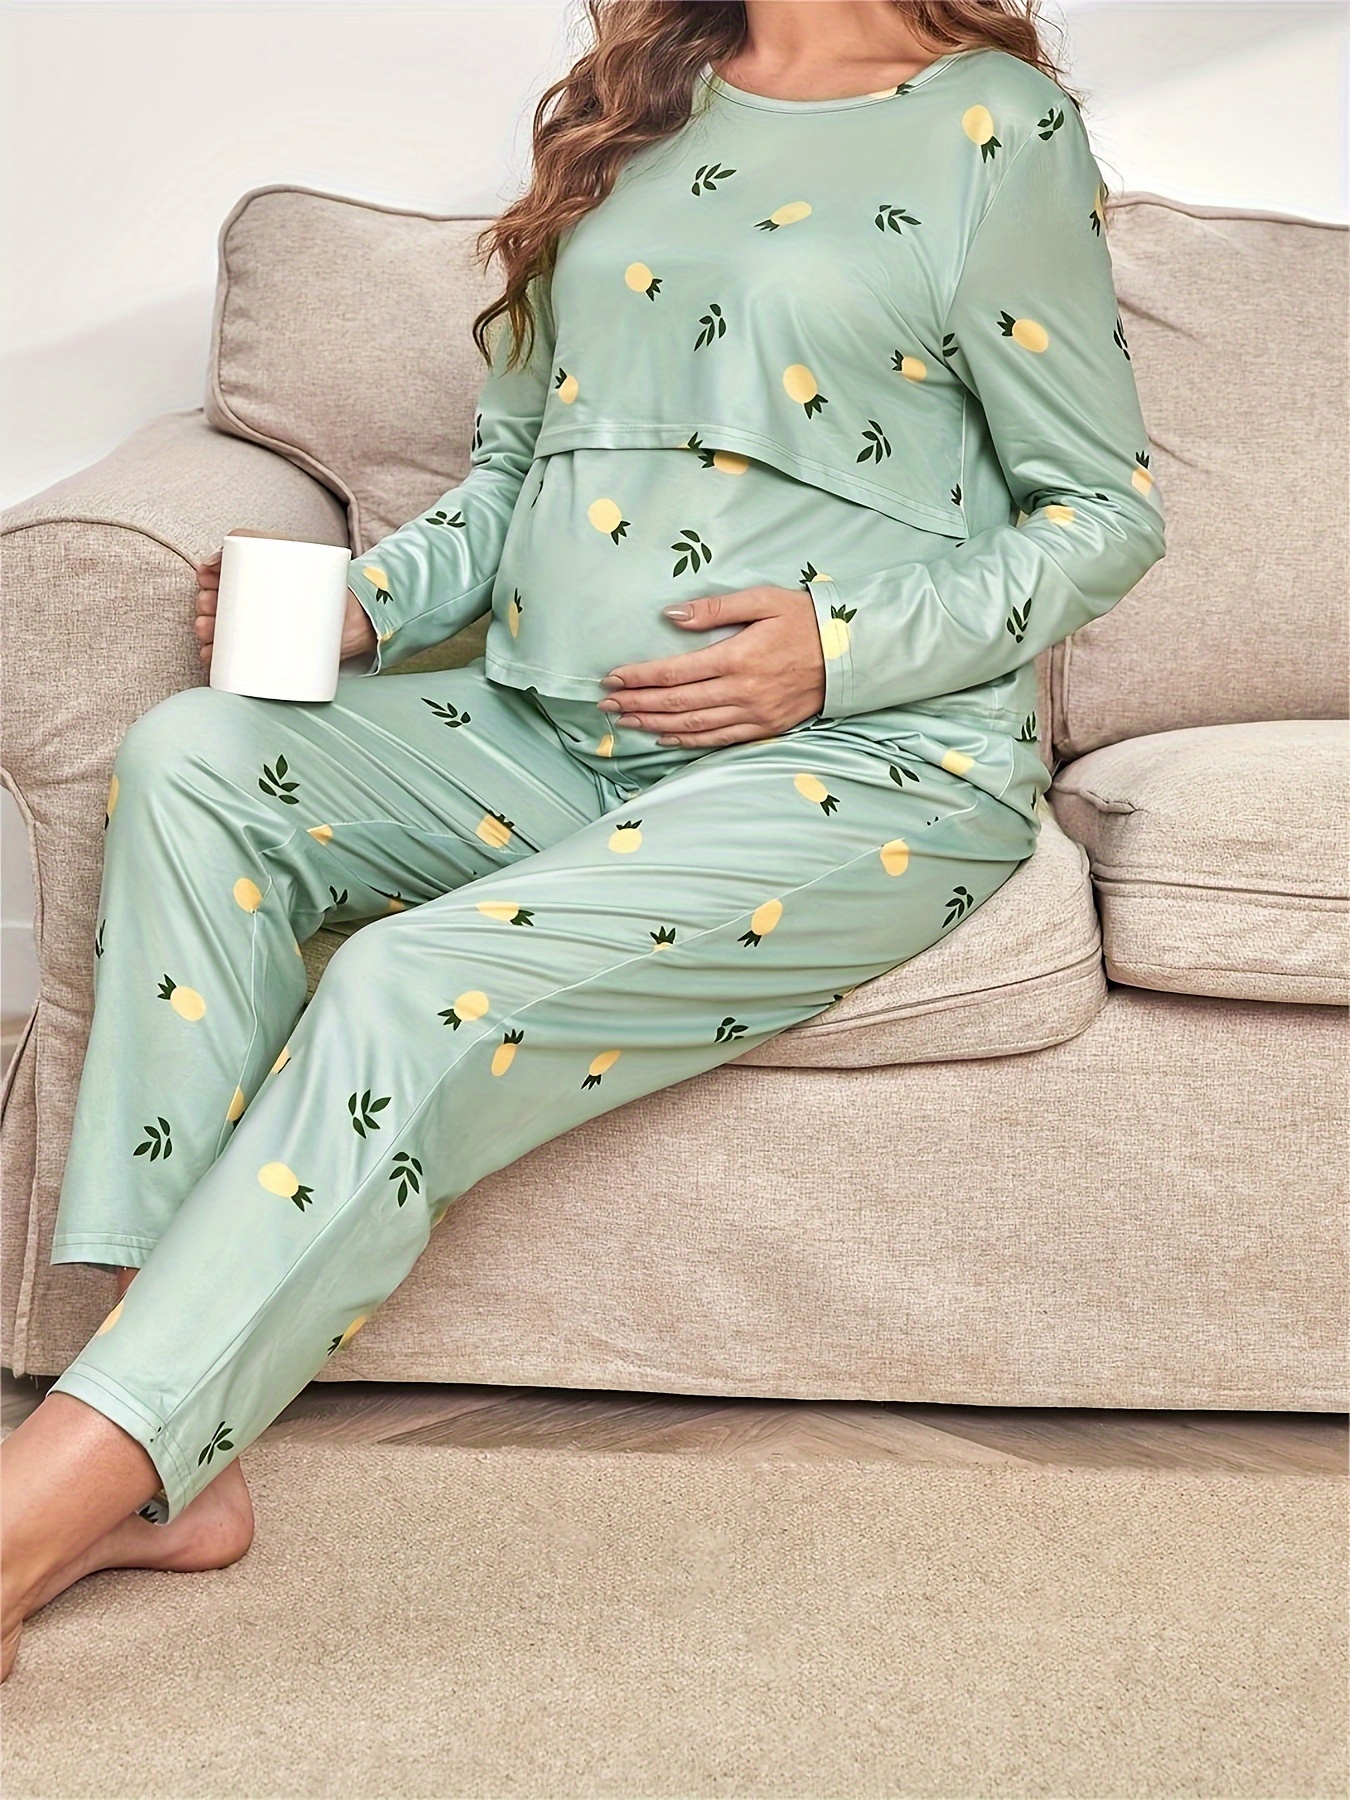 Pyjama d'allaitement Maternité, Pyjama Femme Enceinte Deux Pièces